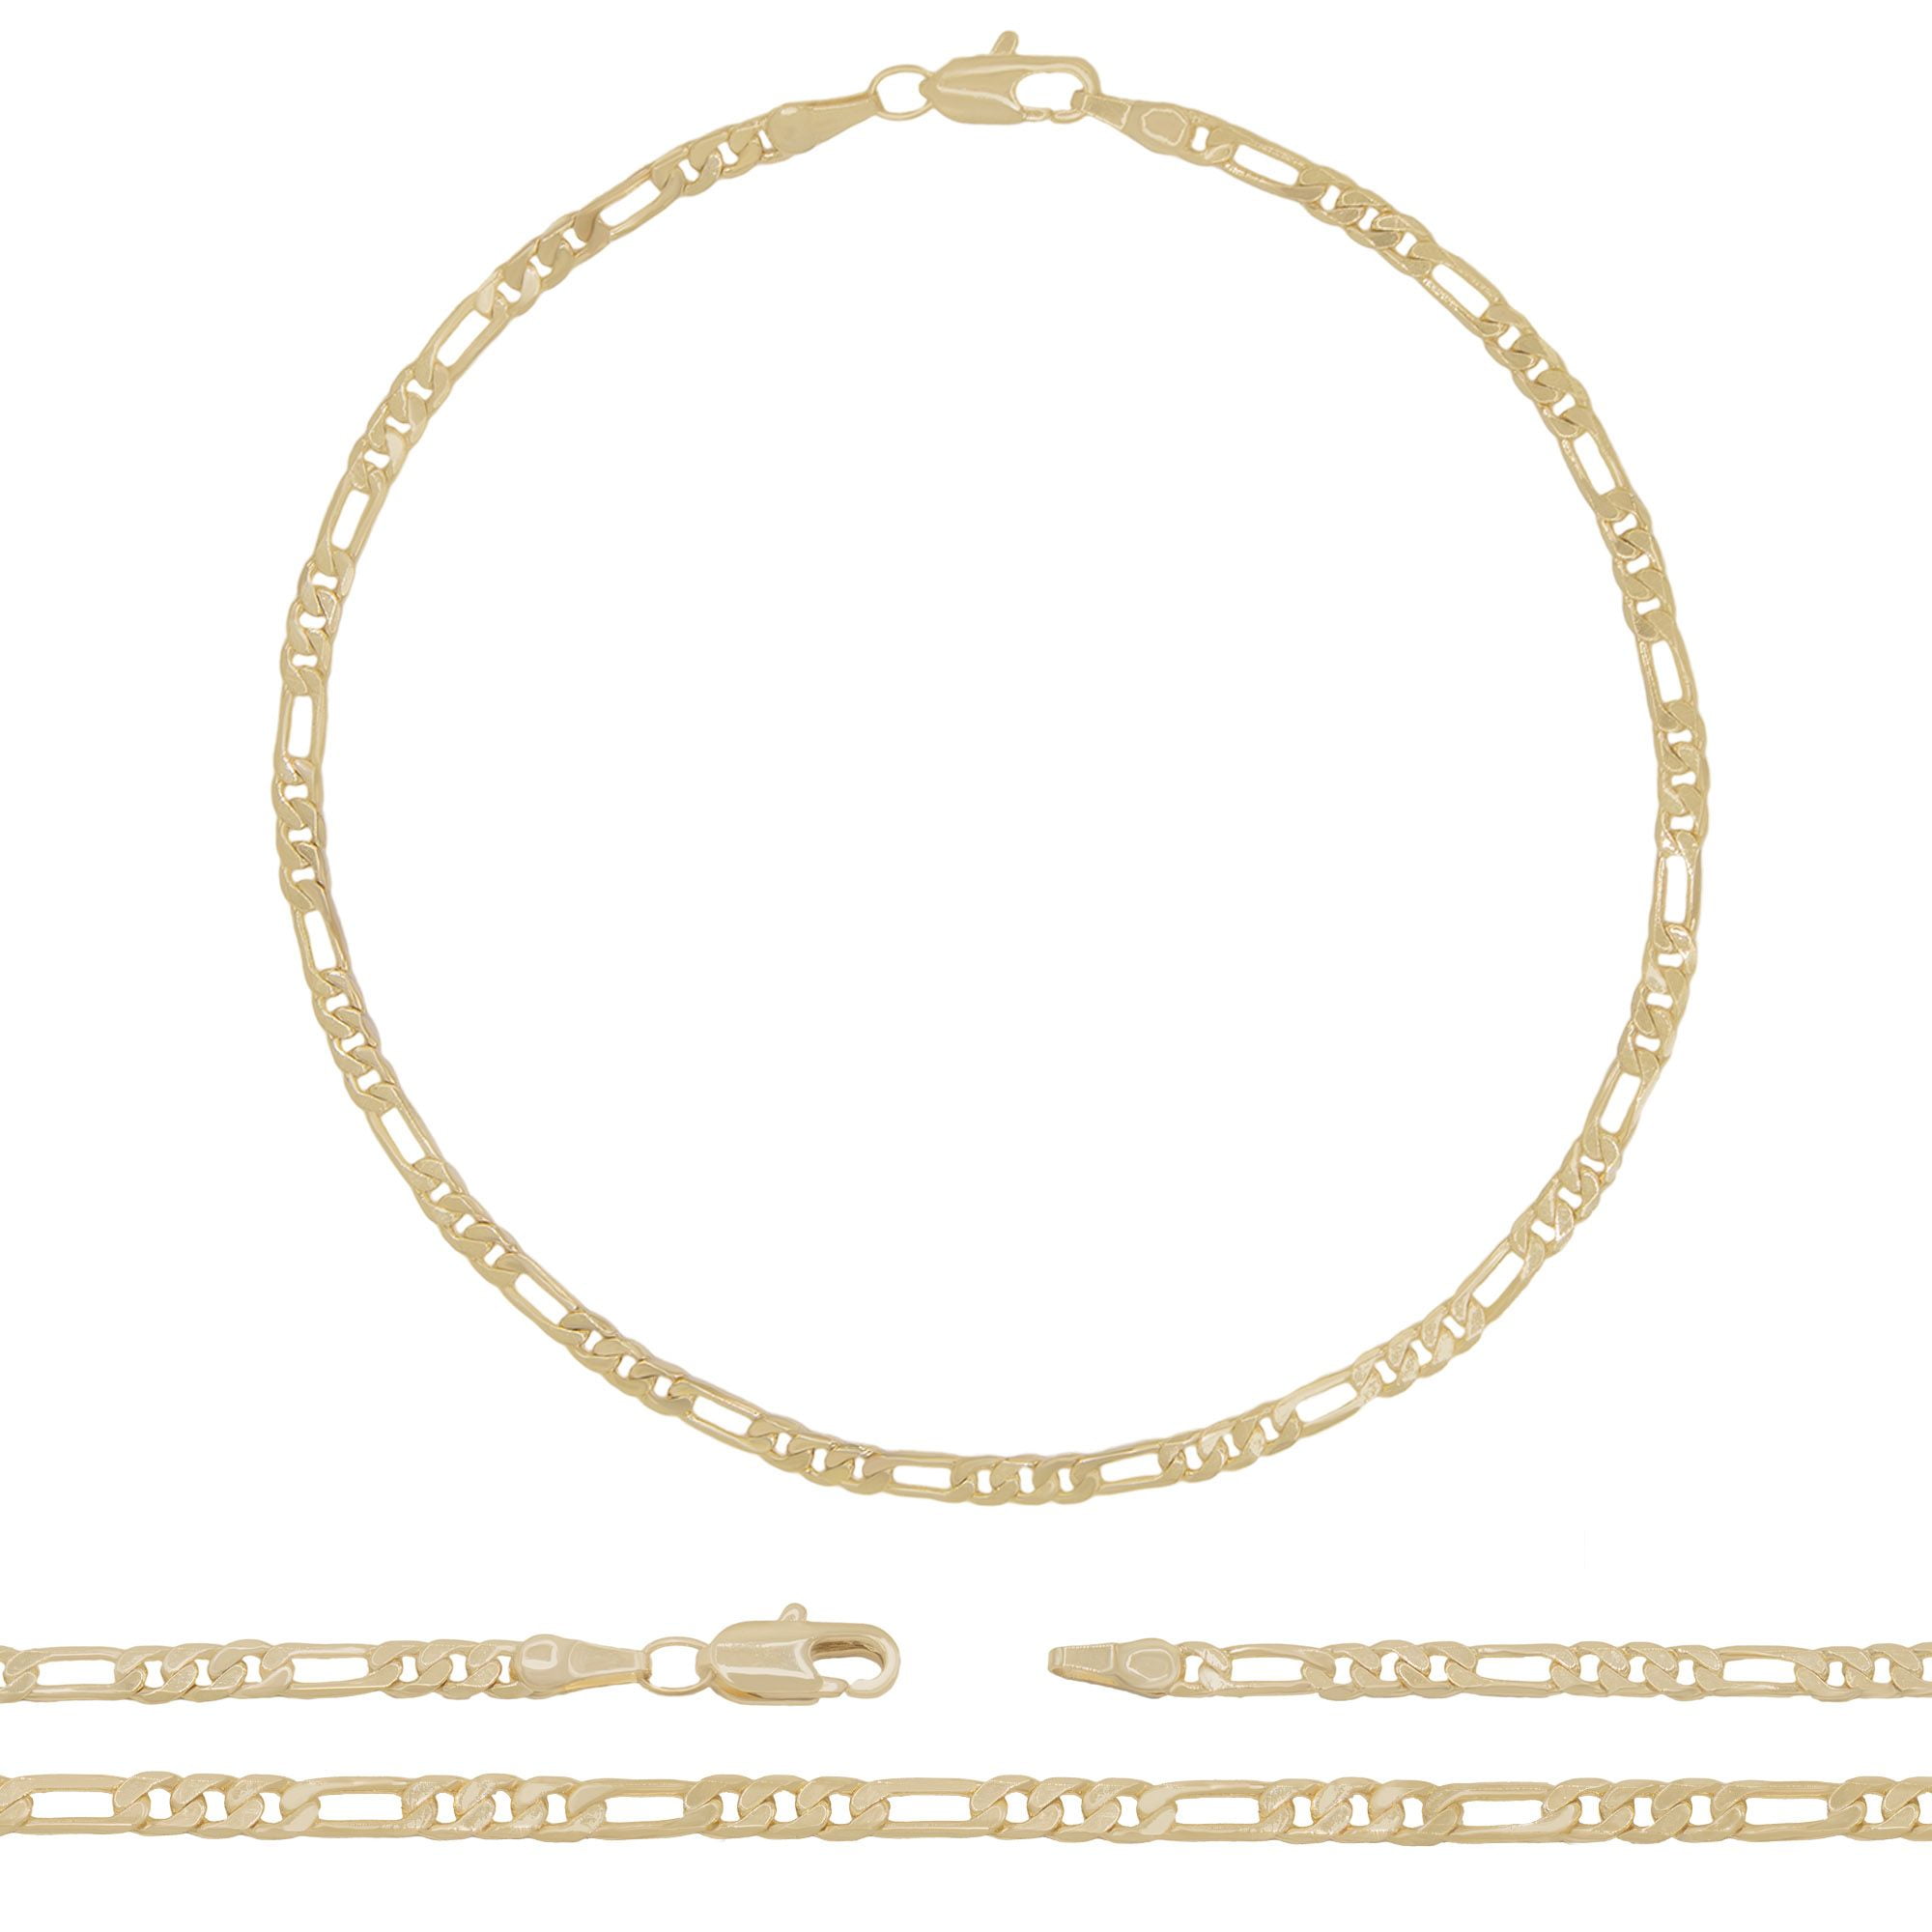 Real Gold Filled Anklet Bracelets Figaro Link 10 Inch 5mm 14k Layered 